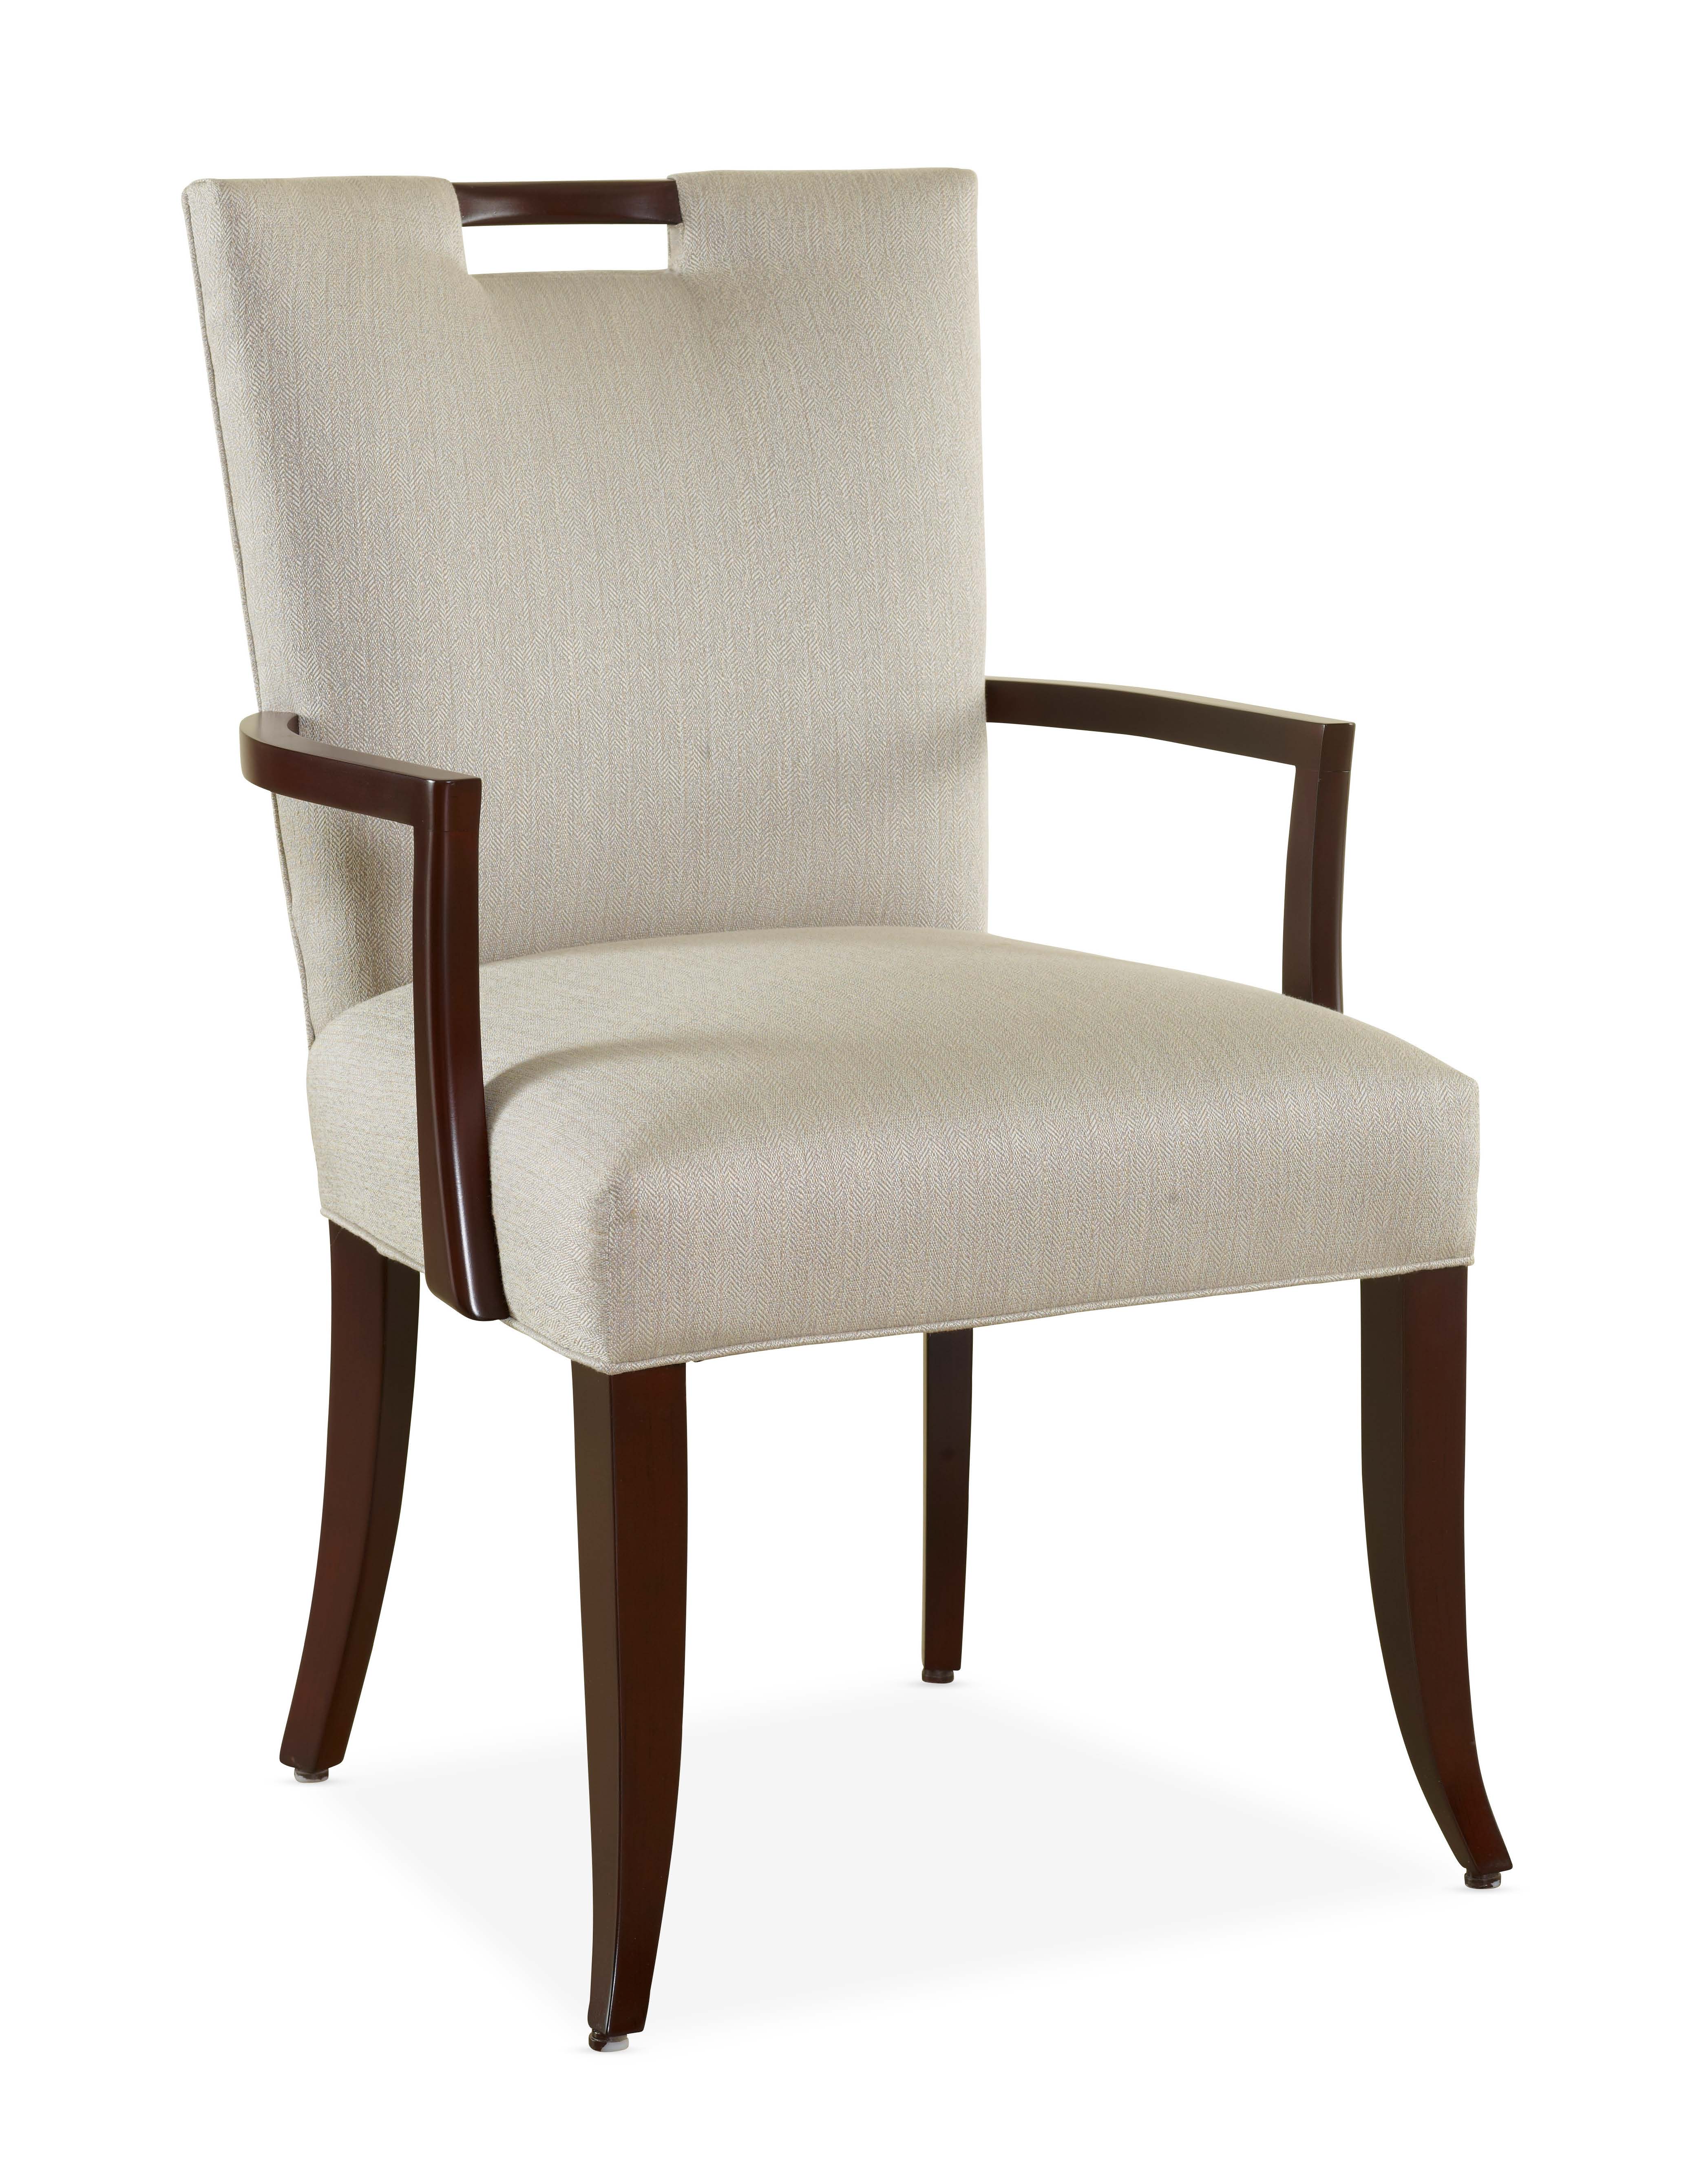 Darby Arm Chair - Designmaster Furniture